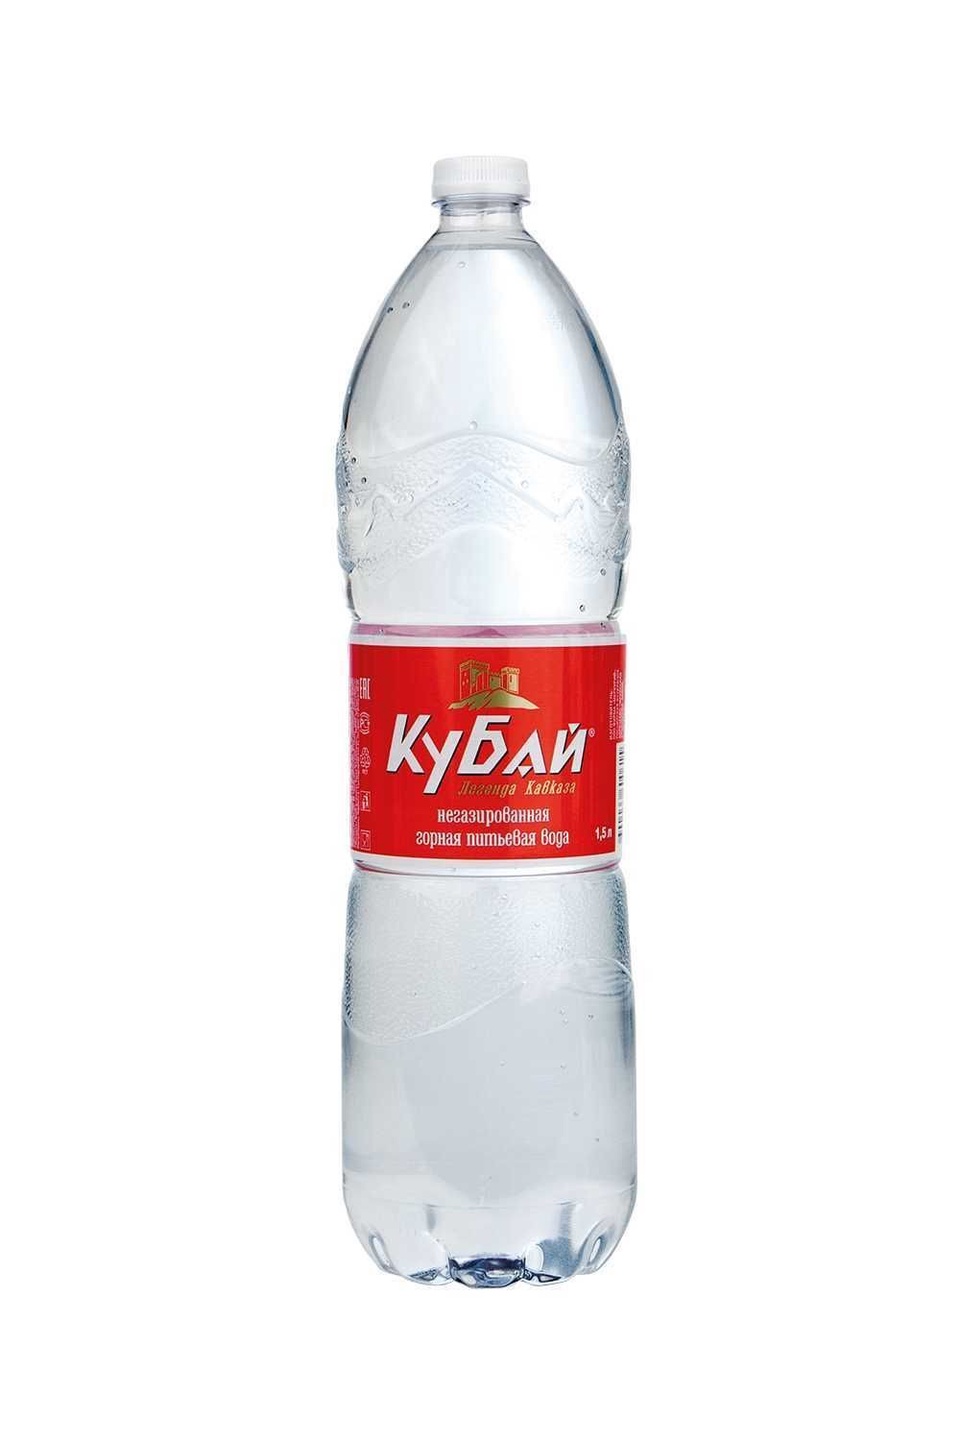 Вода негазированная Кубай 1,5 л - 40 ₽, заказать онлайн.